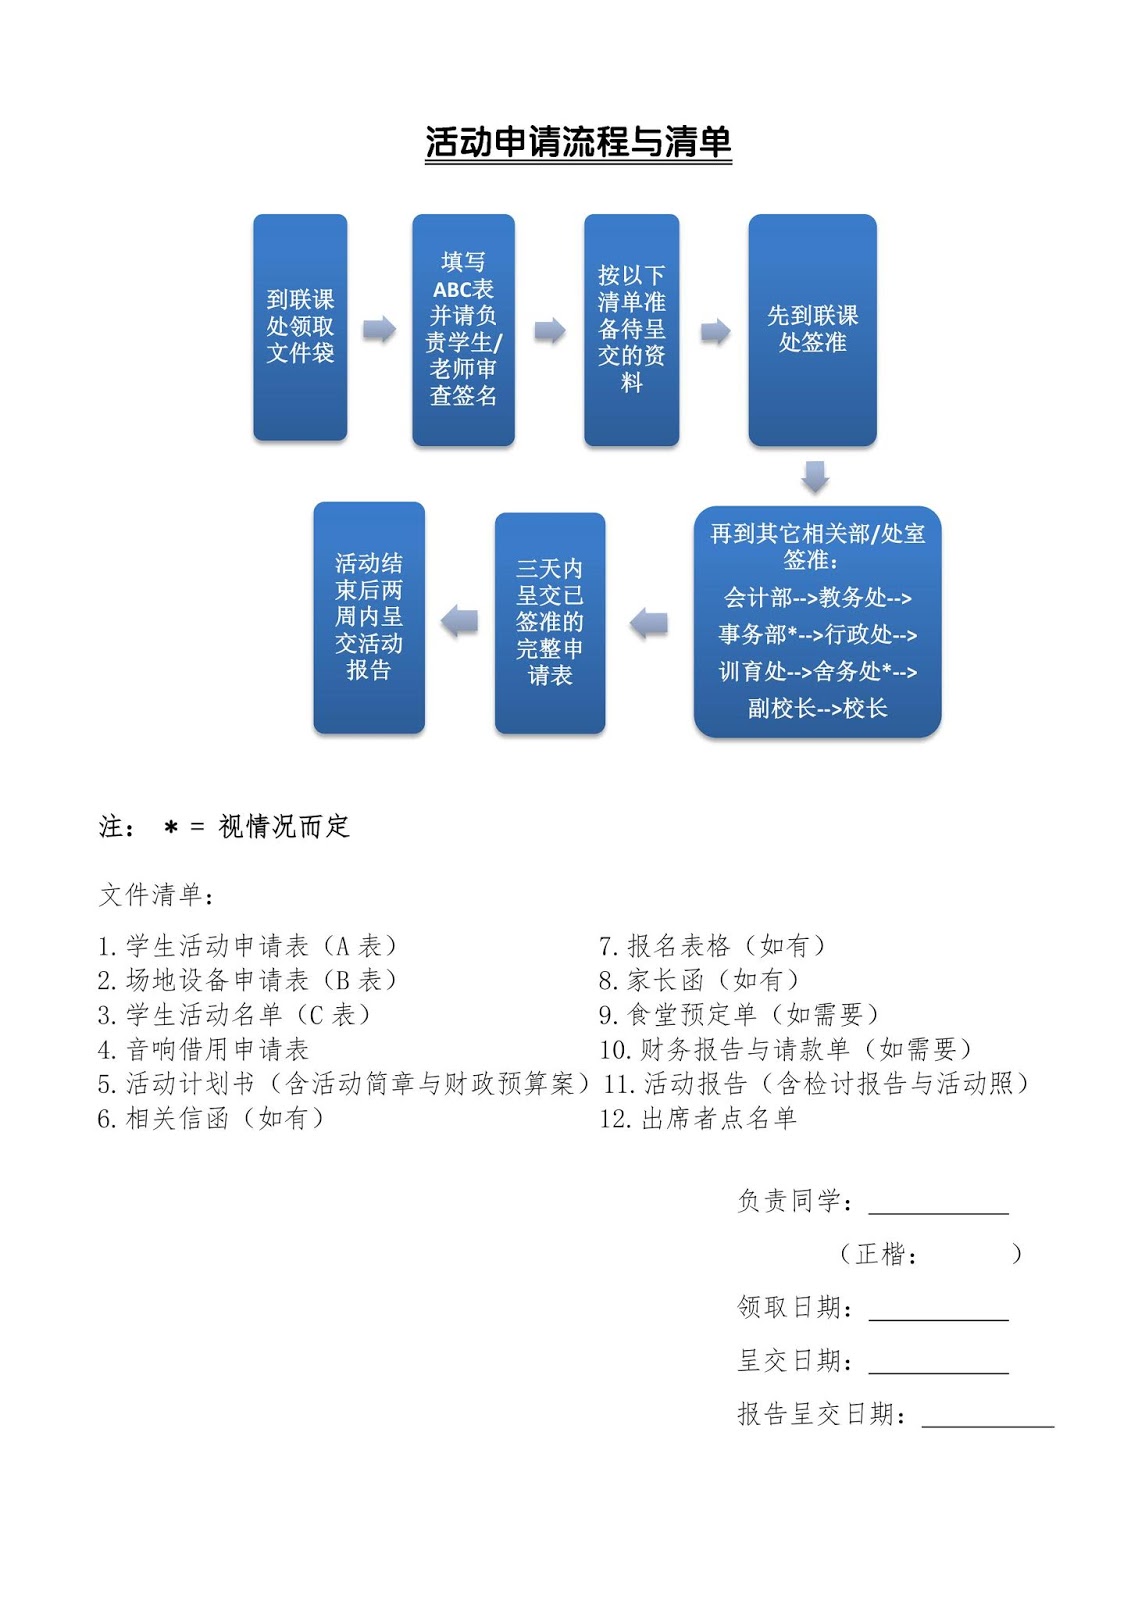 Abc申请表作业流程